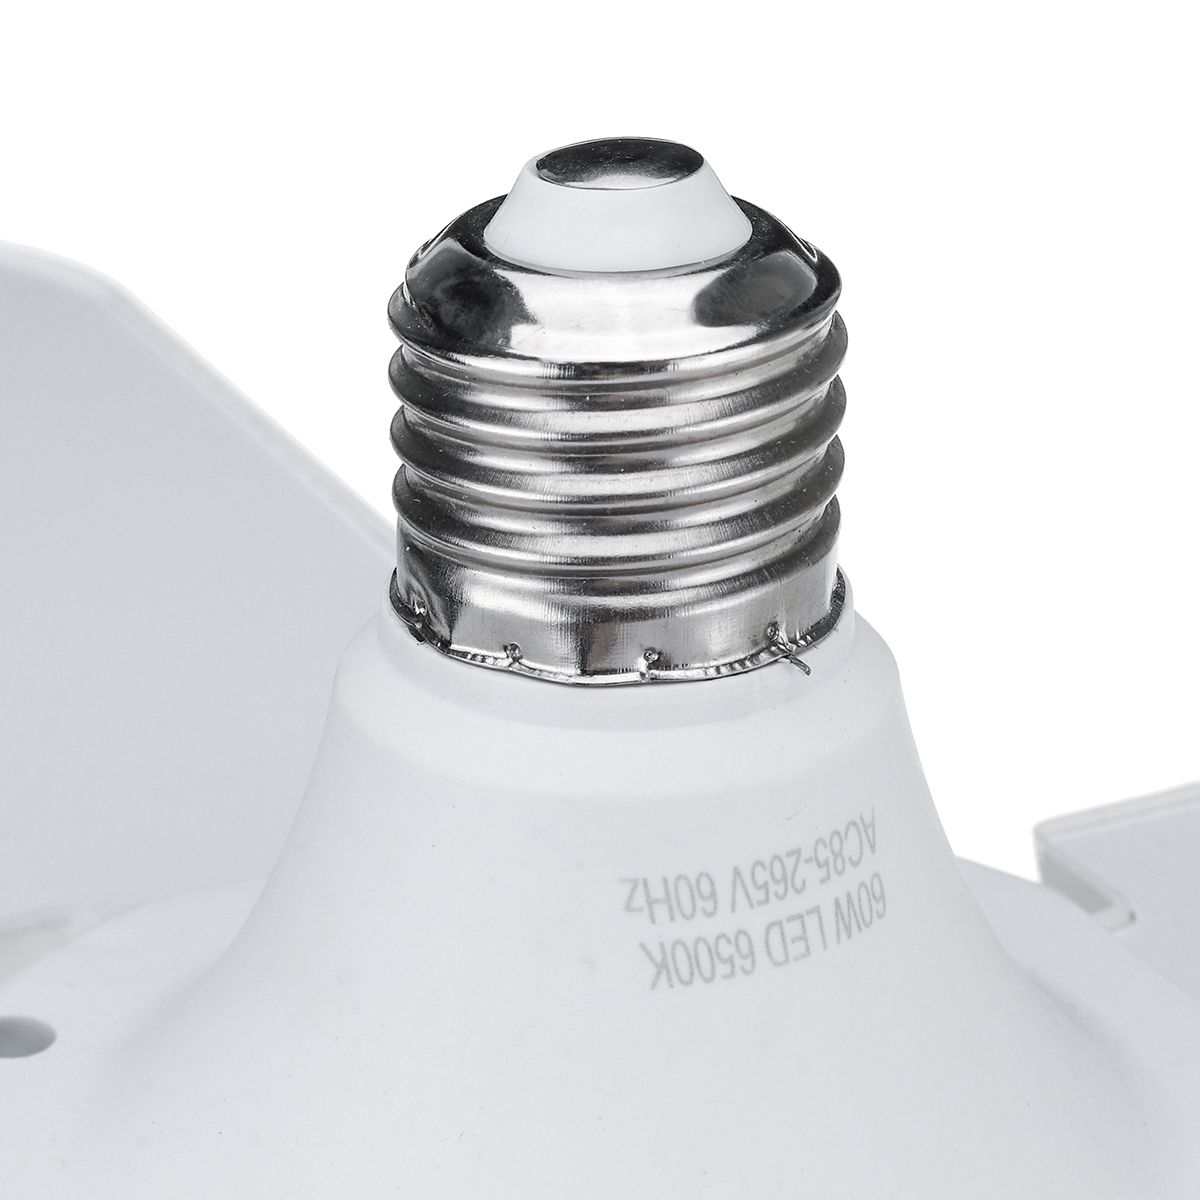 60W-E27-4800LM-LED-Garage-Light-Bulb-Deformable-Ceiling-Fixture-Workshop-Lamp-AC85-265V-AC165-265V-1634710